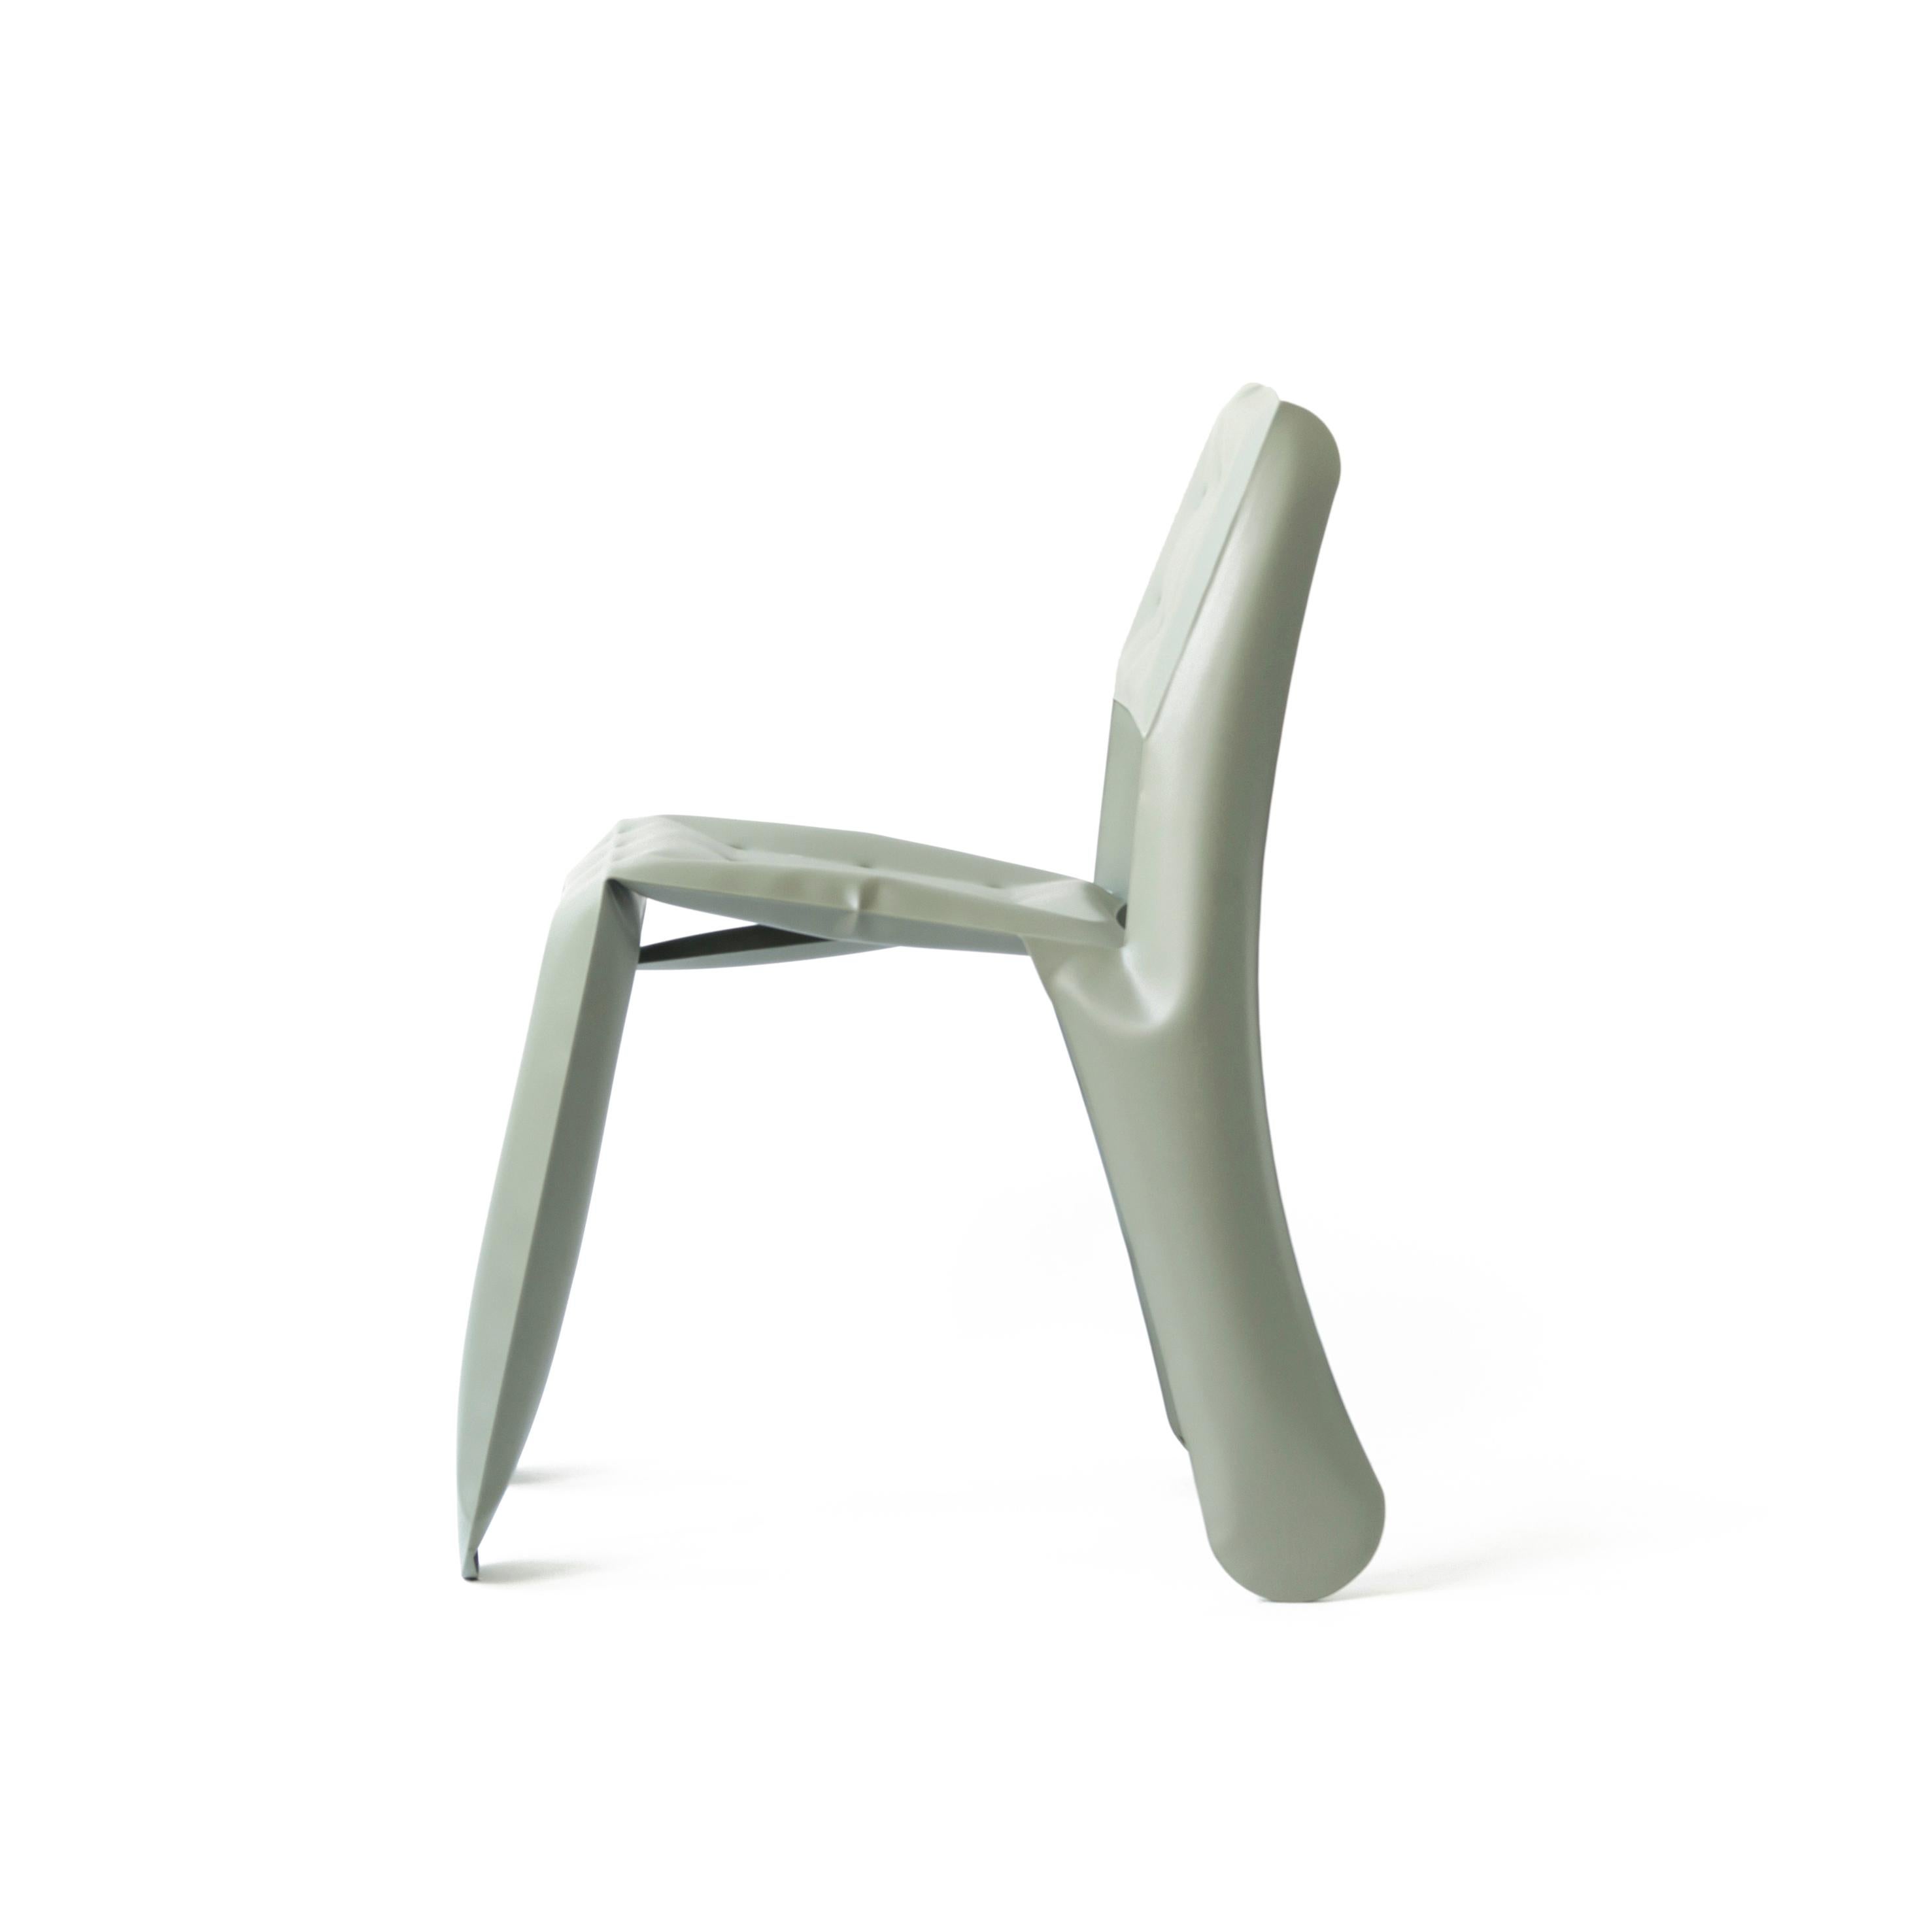 Organic Modern Moss Grey Aluminum Chippensteel 0.5 Sculptural Chair by Zieta For Sale